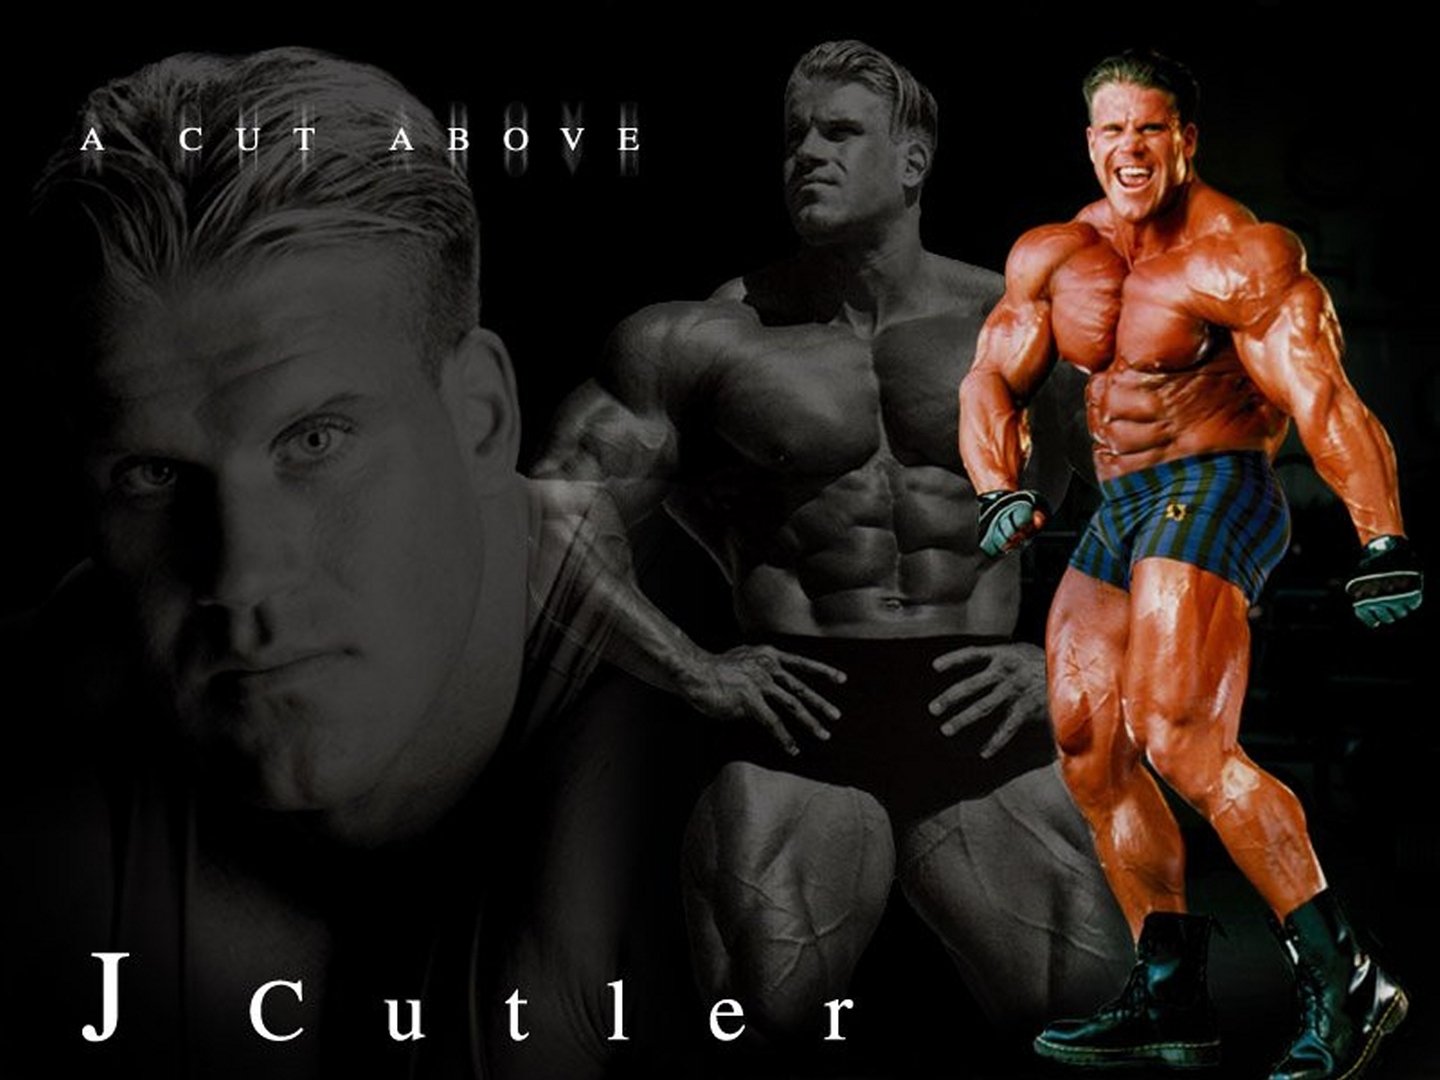 jay cutler fond d'écran hd,la musculation,bodybuilder,forme physique,professionnel du fitness,torse nu